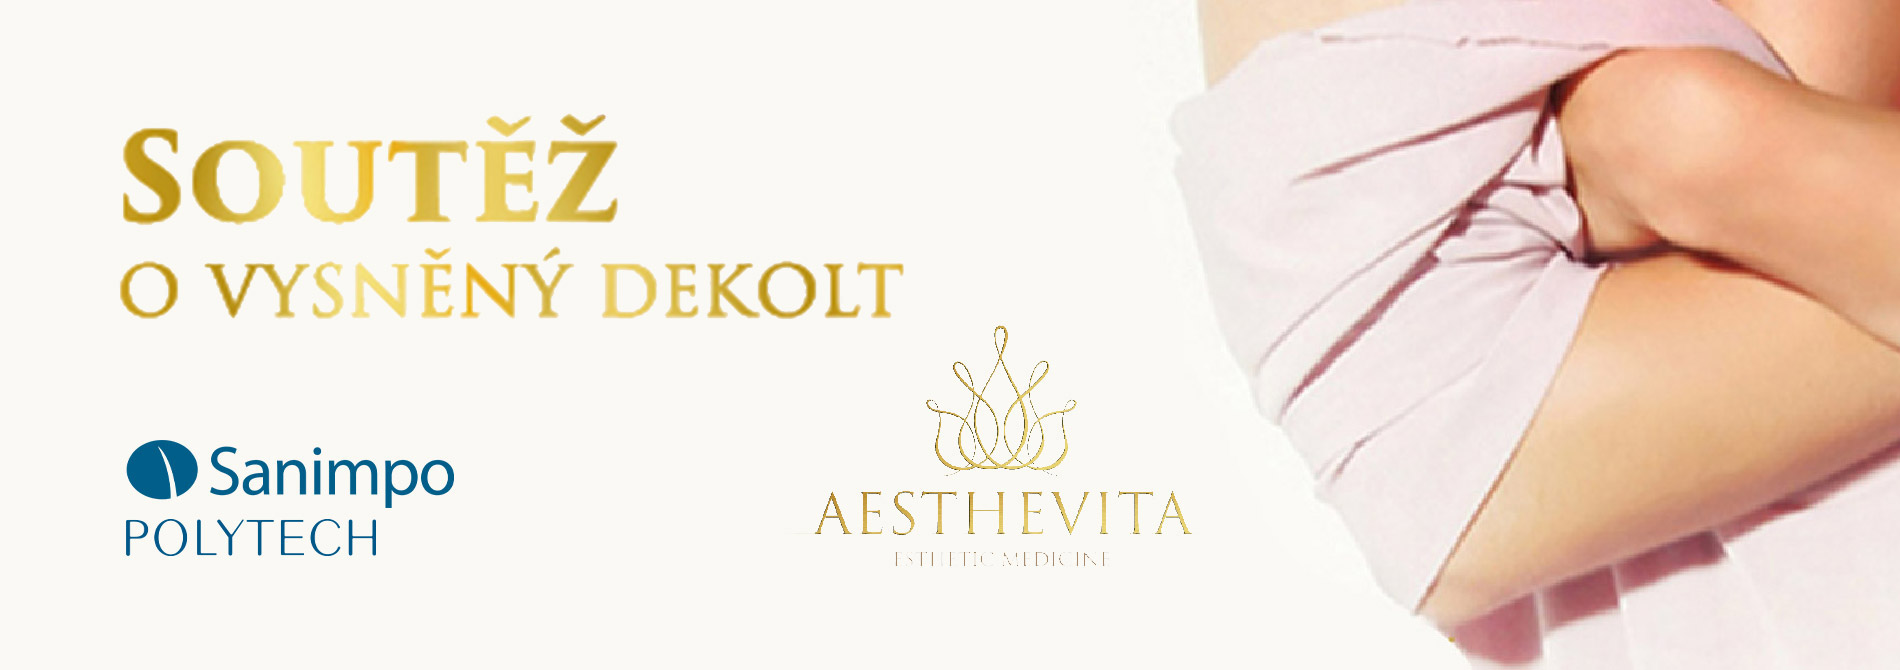 Soutěž o zvětšení prsou zdarma na klinice Aesthevita – Registrace